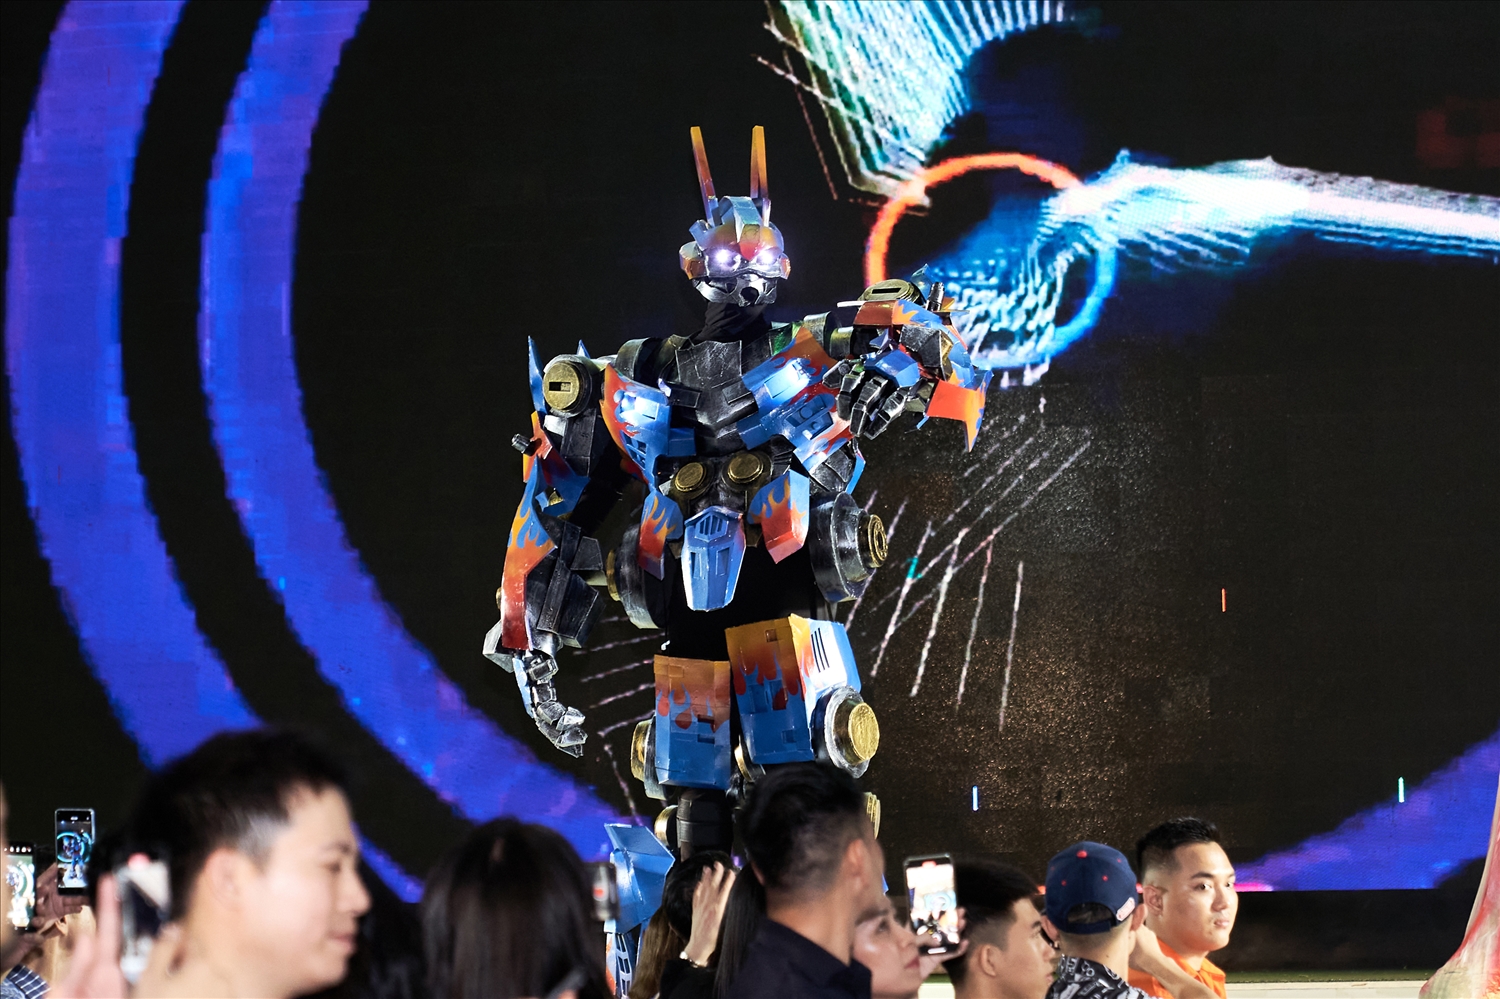 Sự xuất hiện cực kì ấn tượng của nhân vật Robot N-Gene đã tạo ra một cảm xúc choáng ngợp với khán giả theo dõi đêm trình diễn